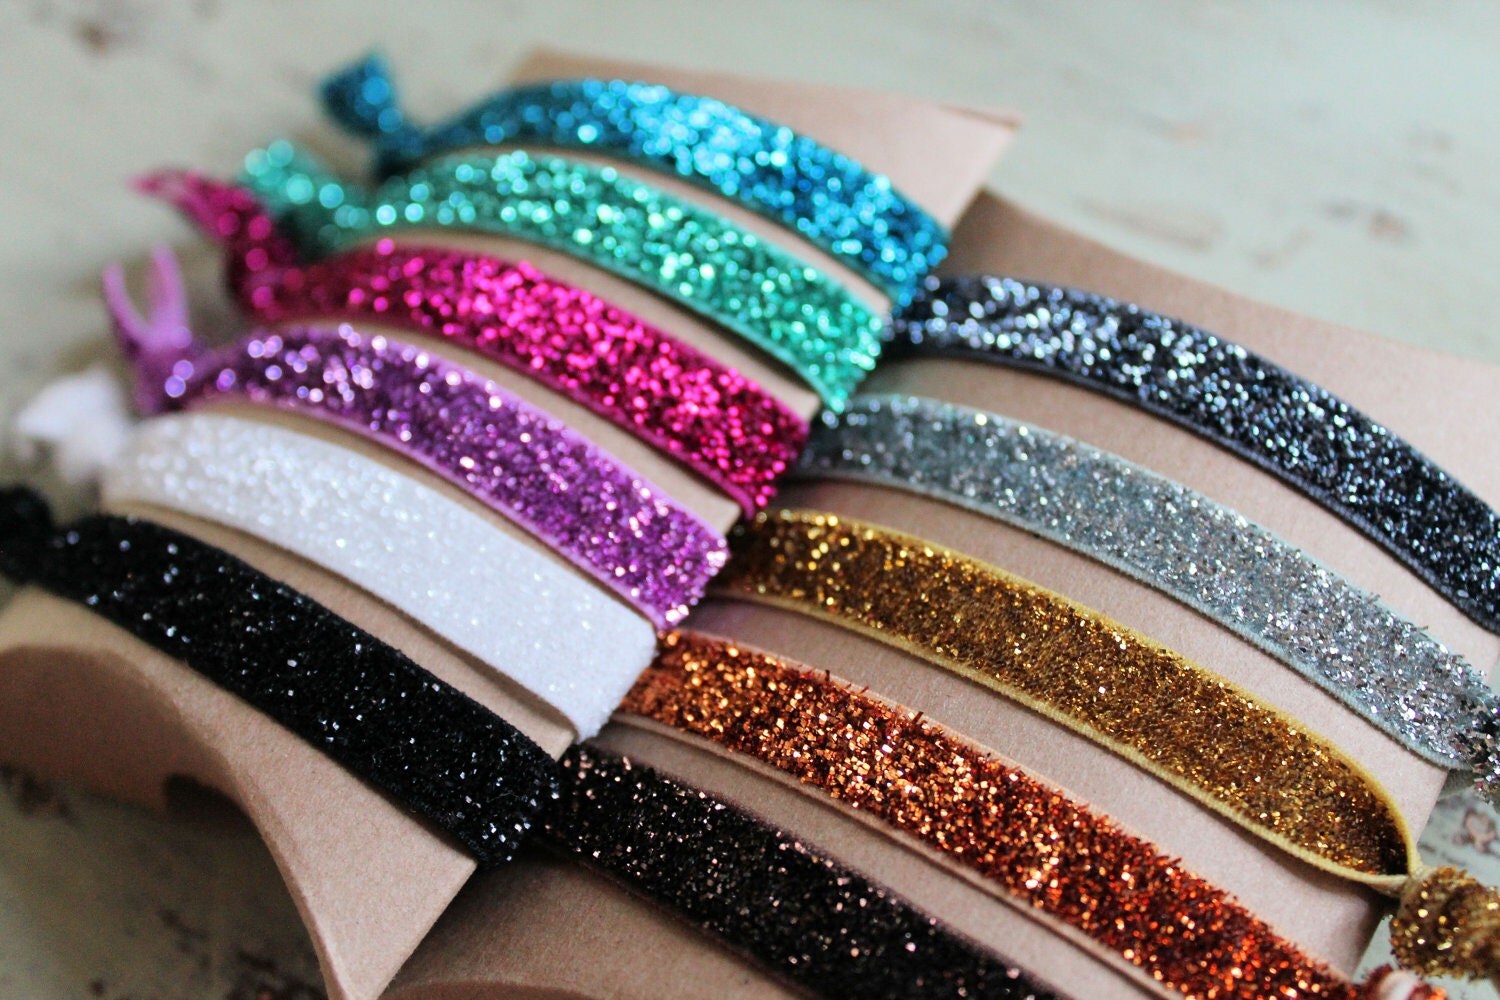 Glitter Elastic Hair Ties - Choose 3 colors - Knotted Hair Ties - Ponytail Holders